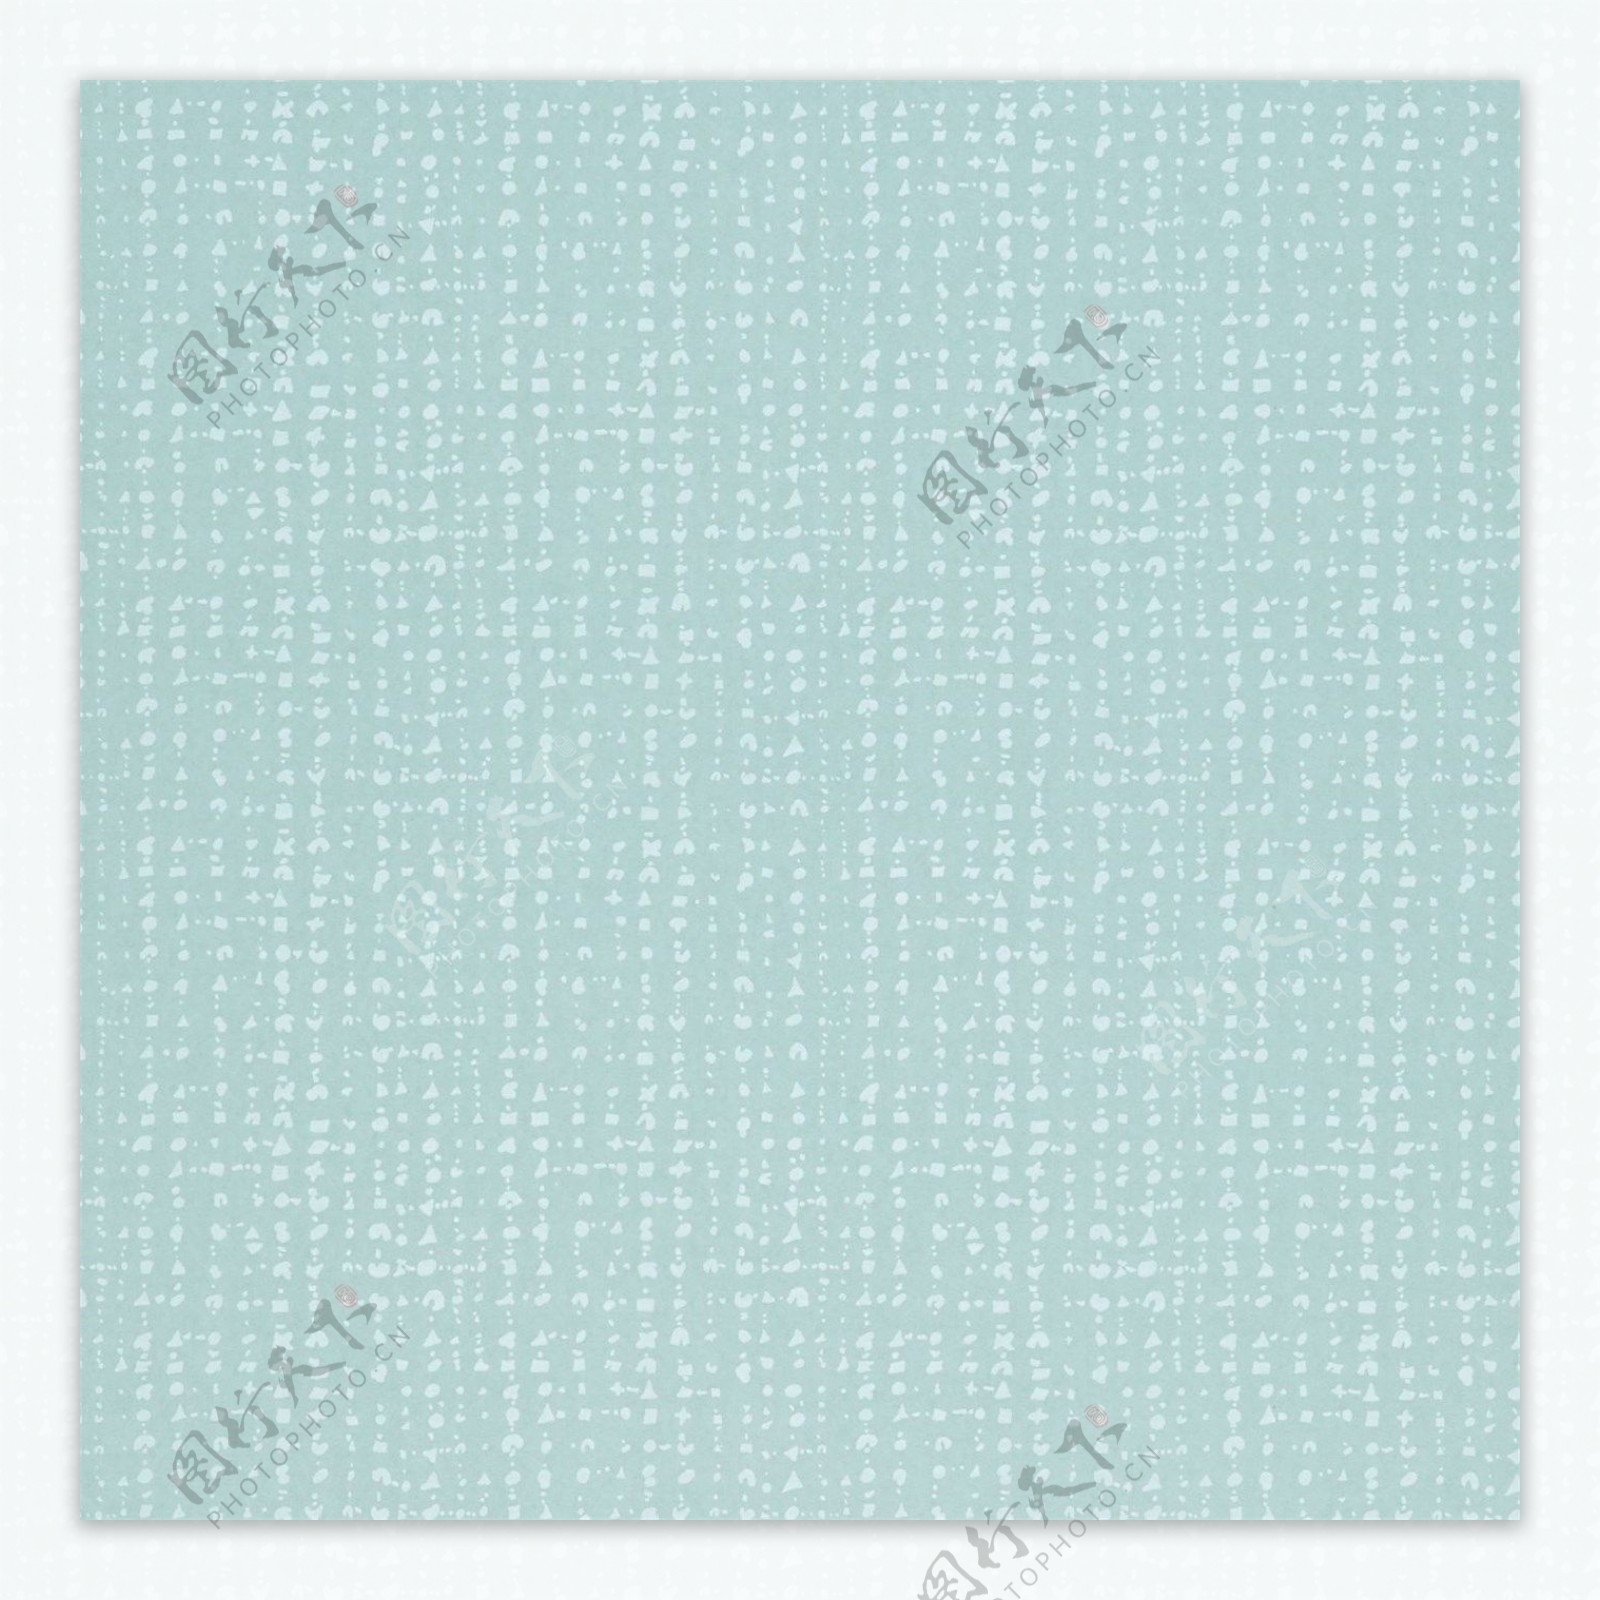 蓝色棉麻材质网点状壁纸素材